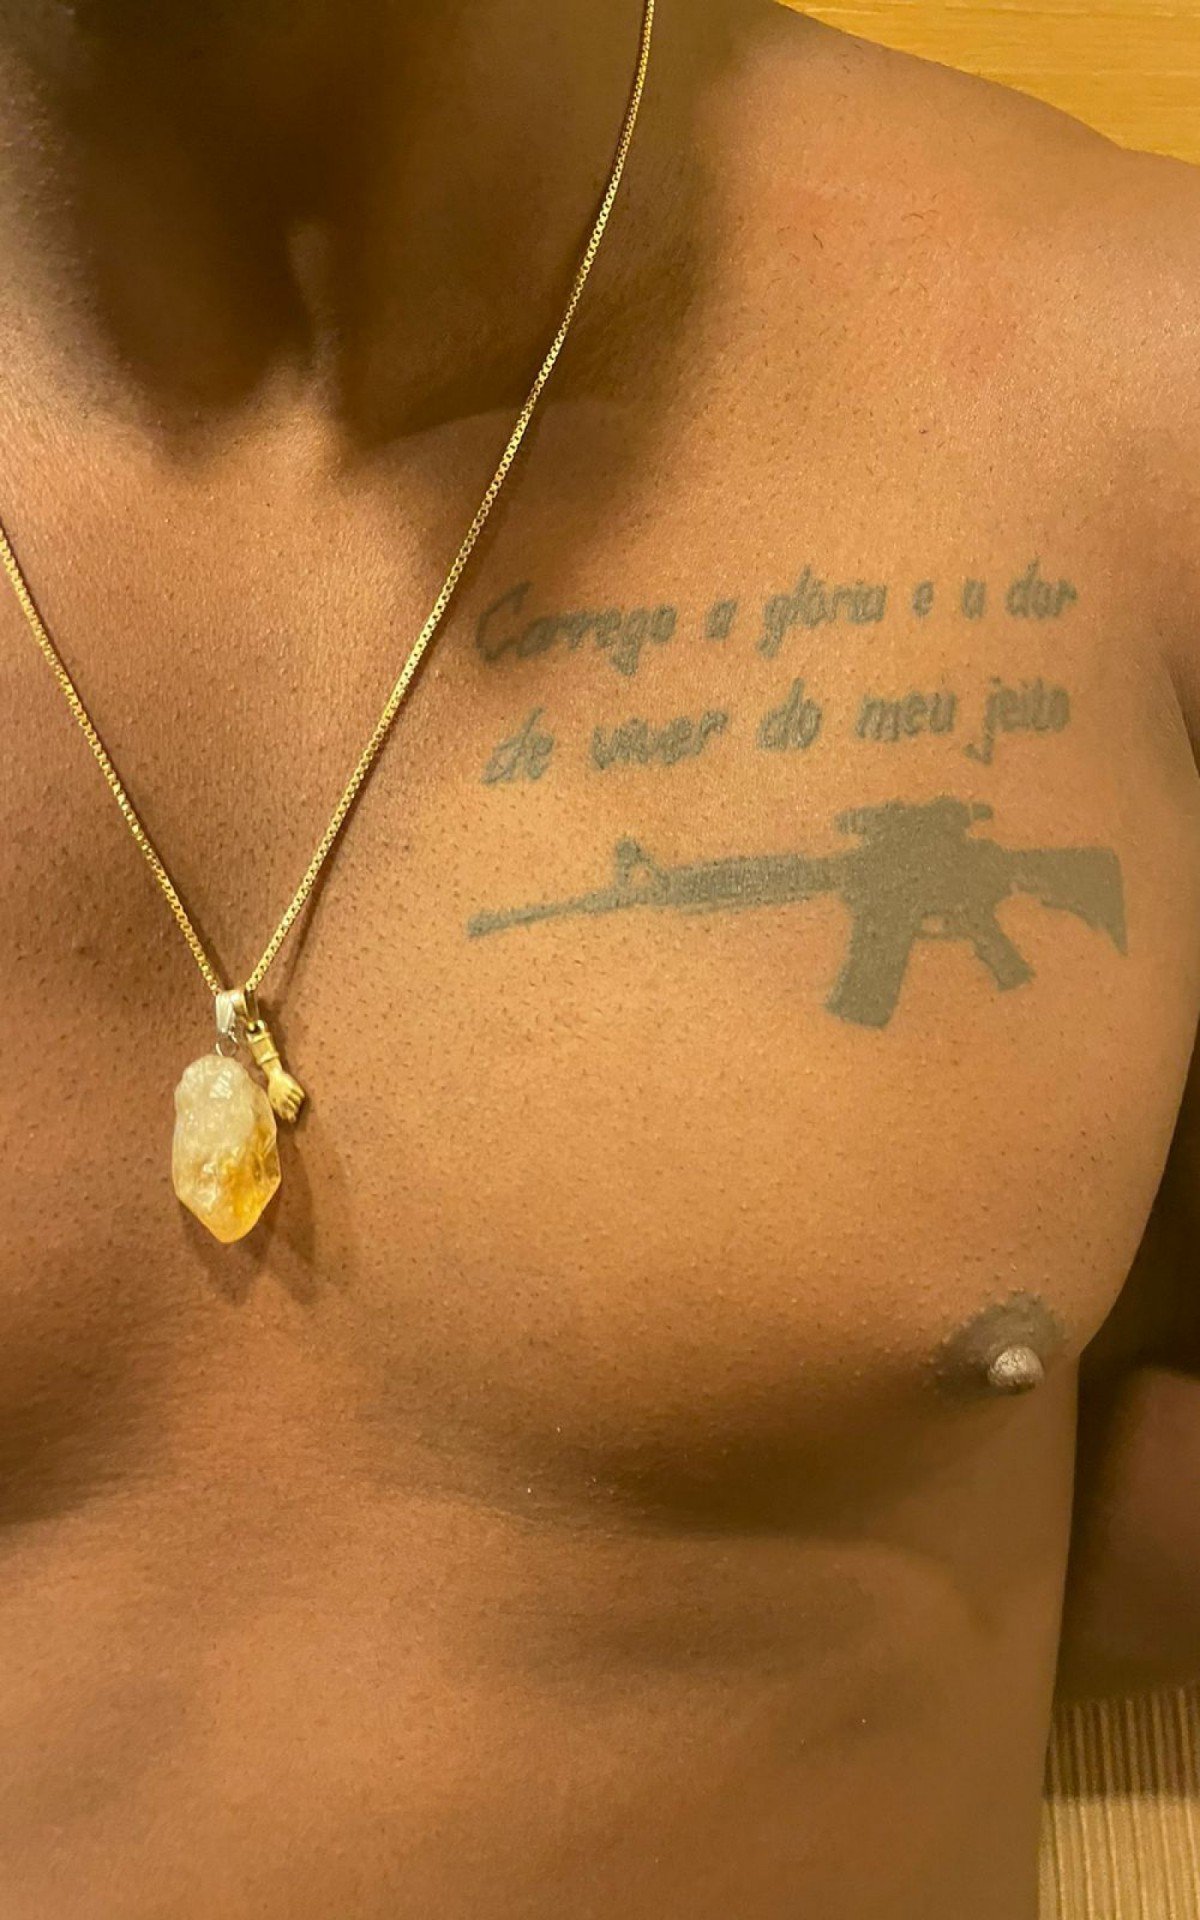 Latrel tem tatuado no peito um fuzil - Divulgação